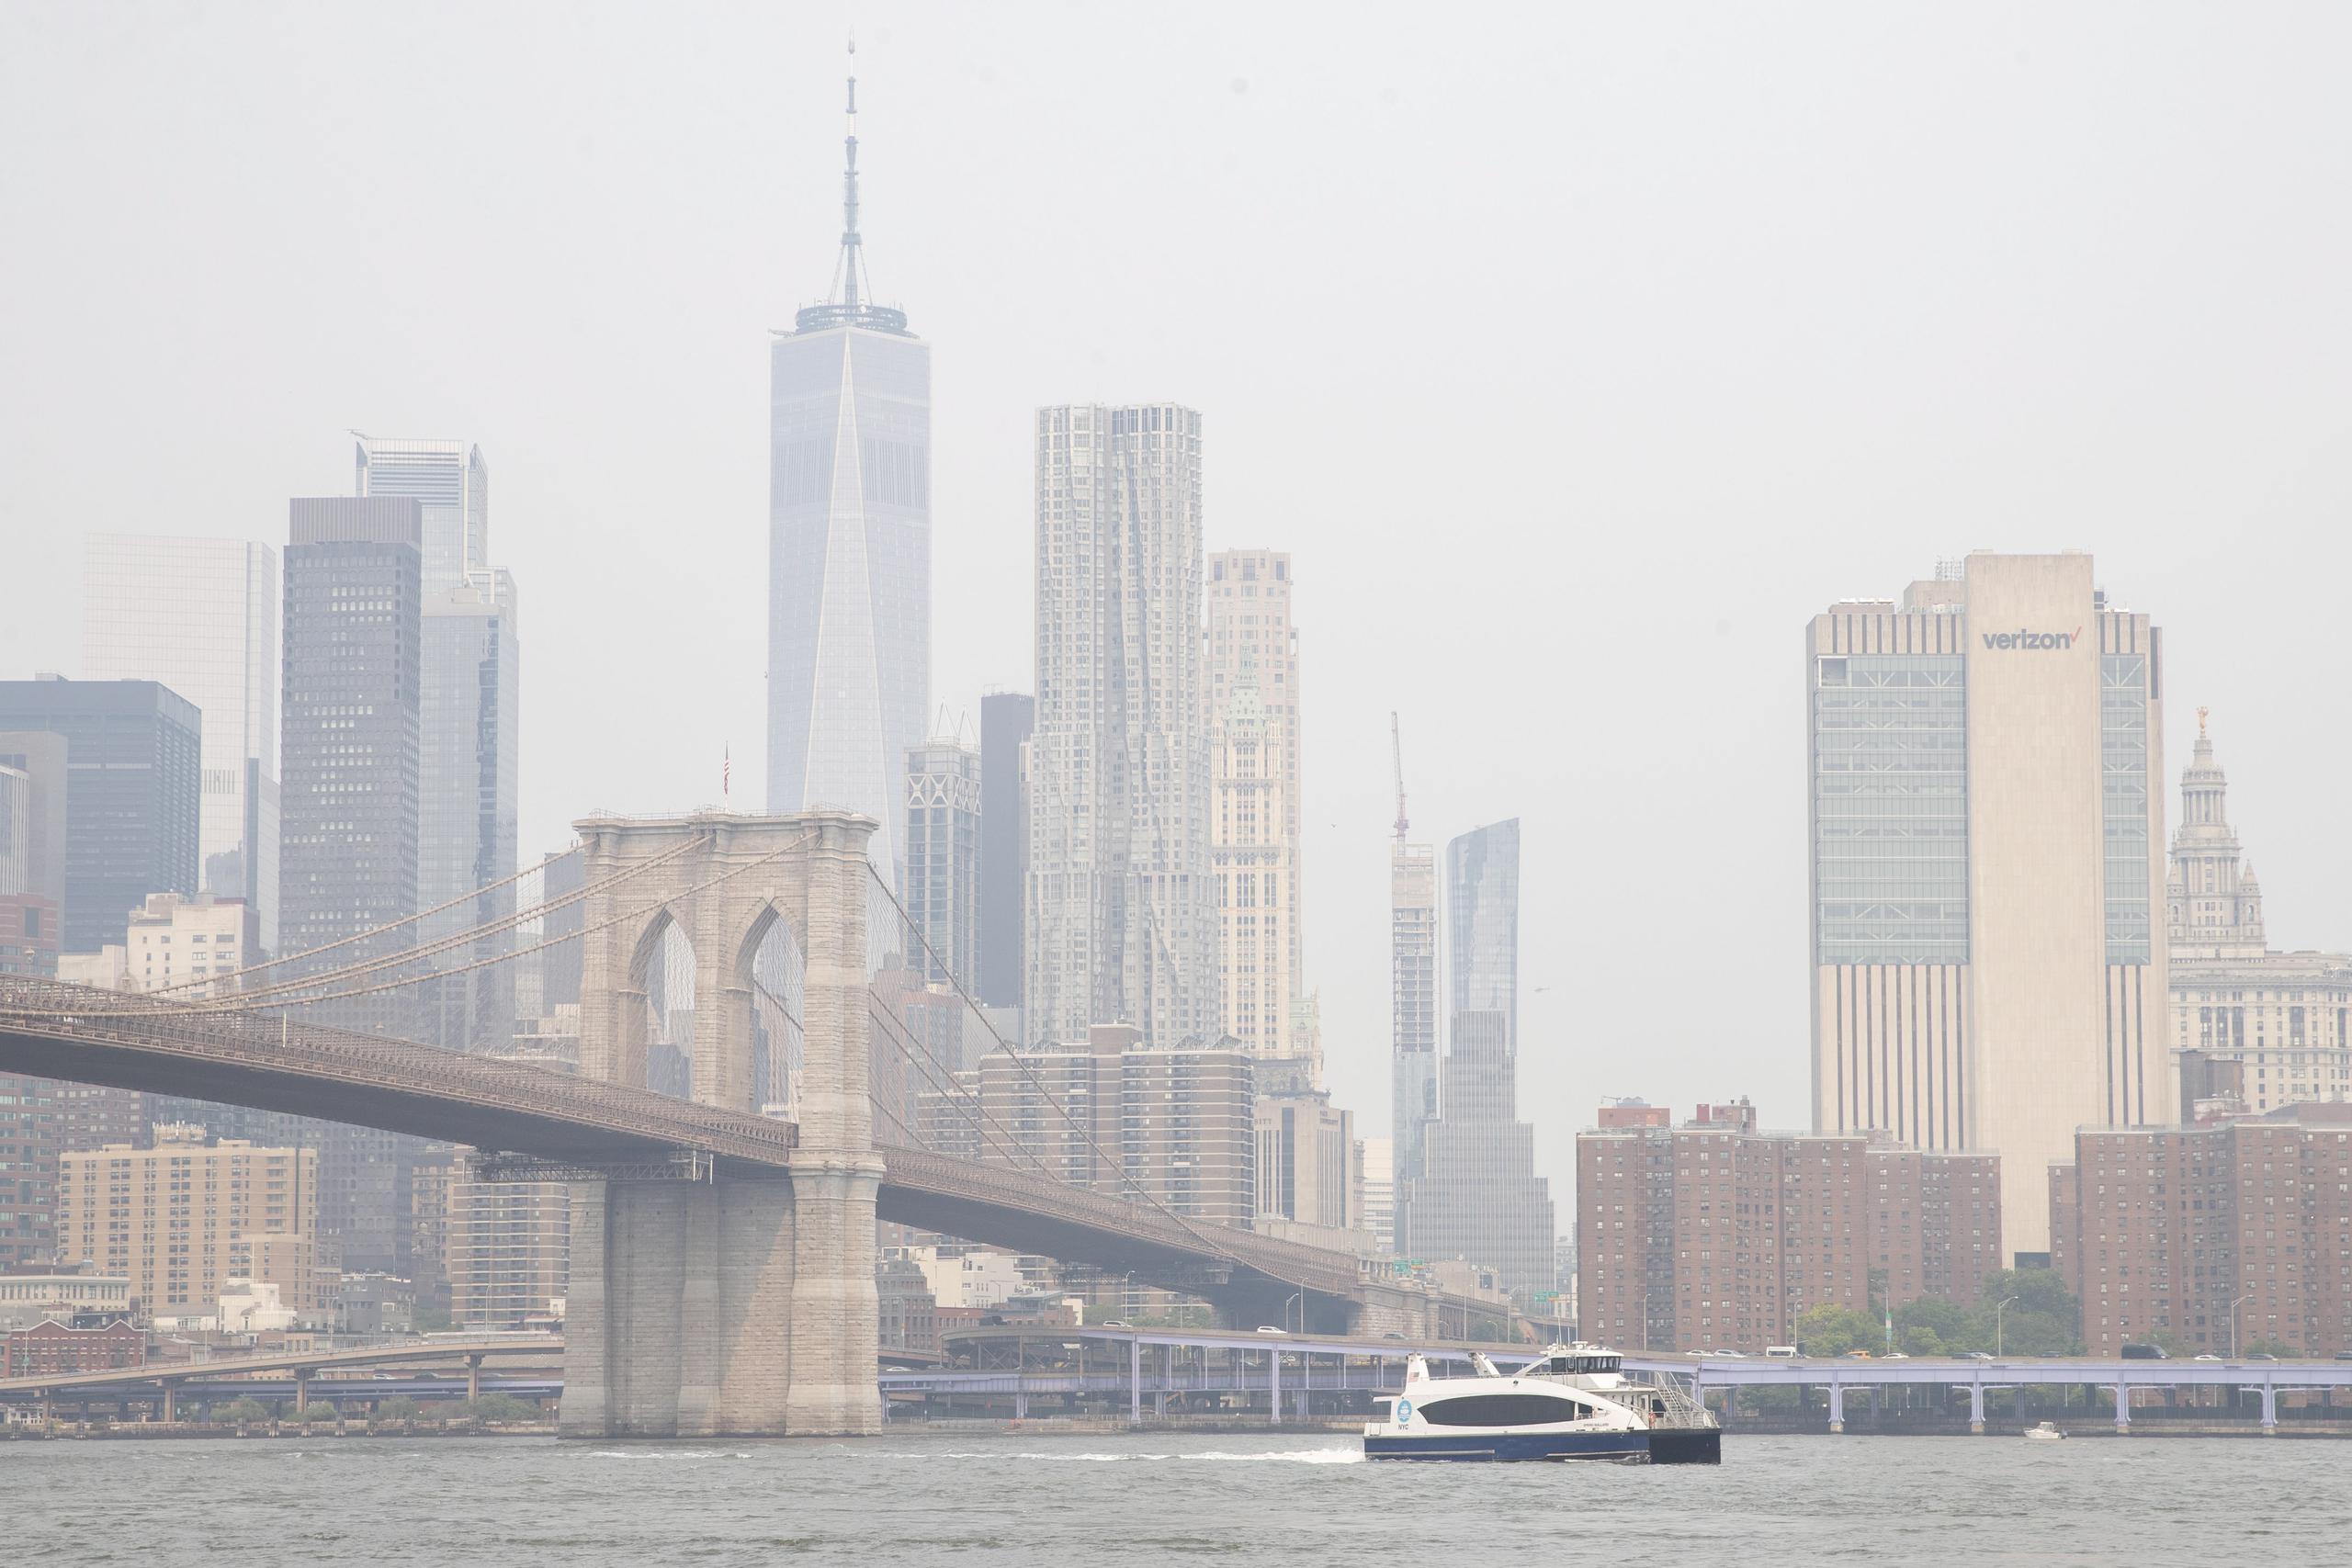 La semana pasada, la ciudad de Nueva York experimentó la peor calidad del aire registrada. (EFE/EPA/SARAH YENESEL)